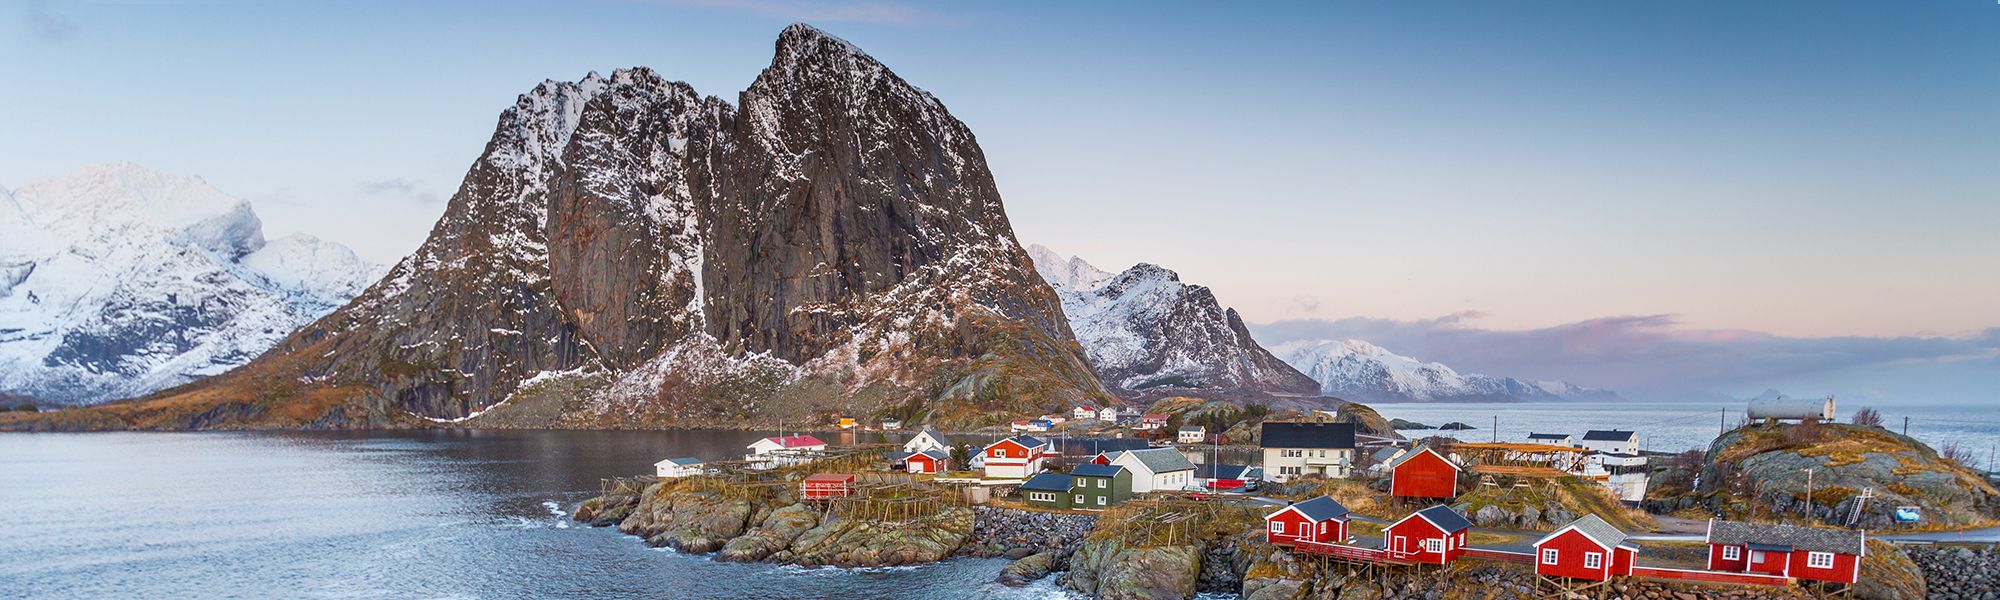 Découverte Norvège © Alex Cornu - Visit Norway